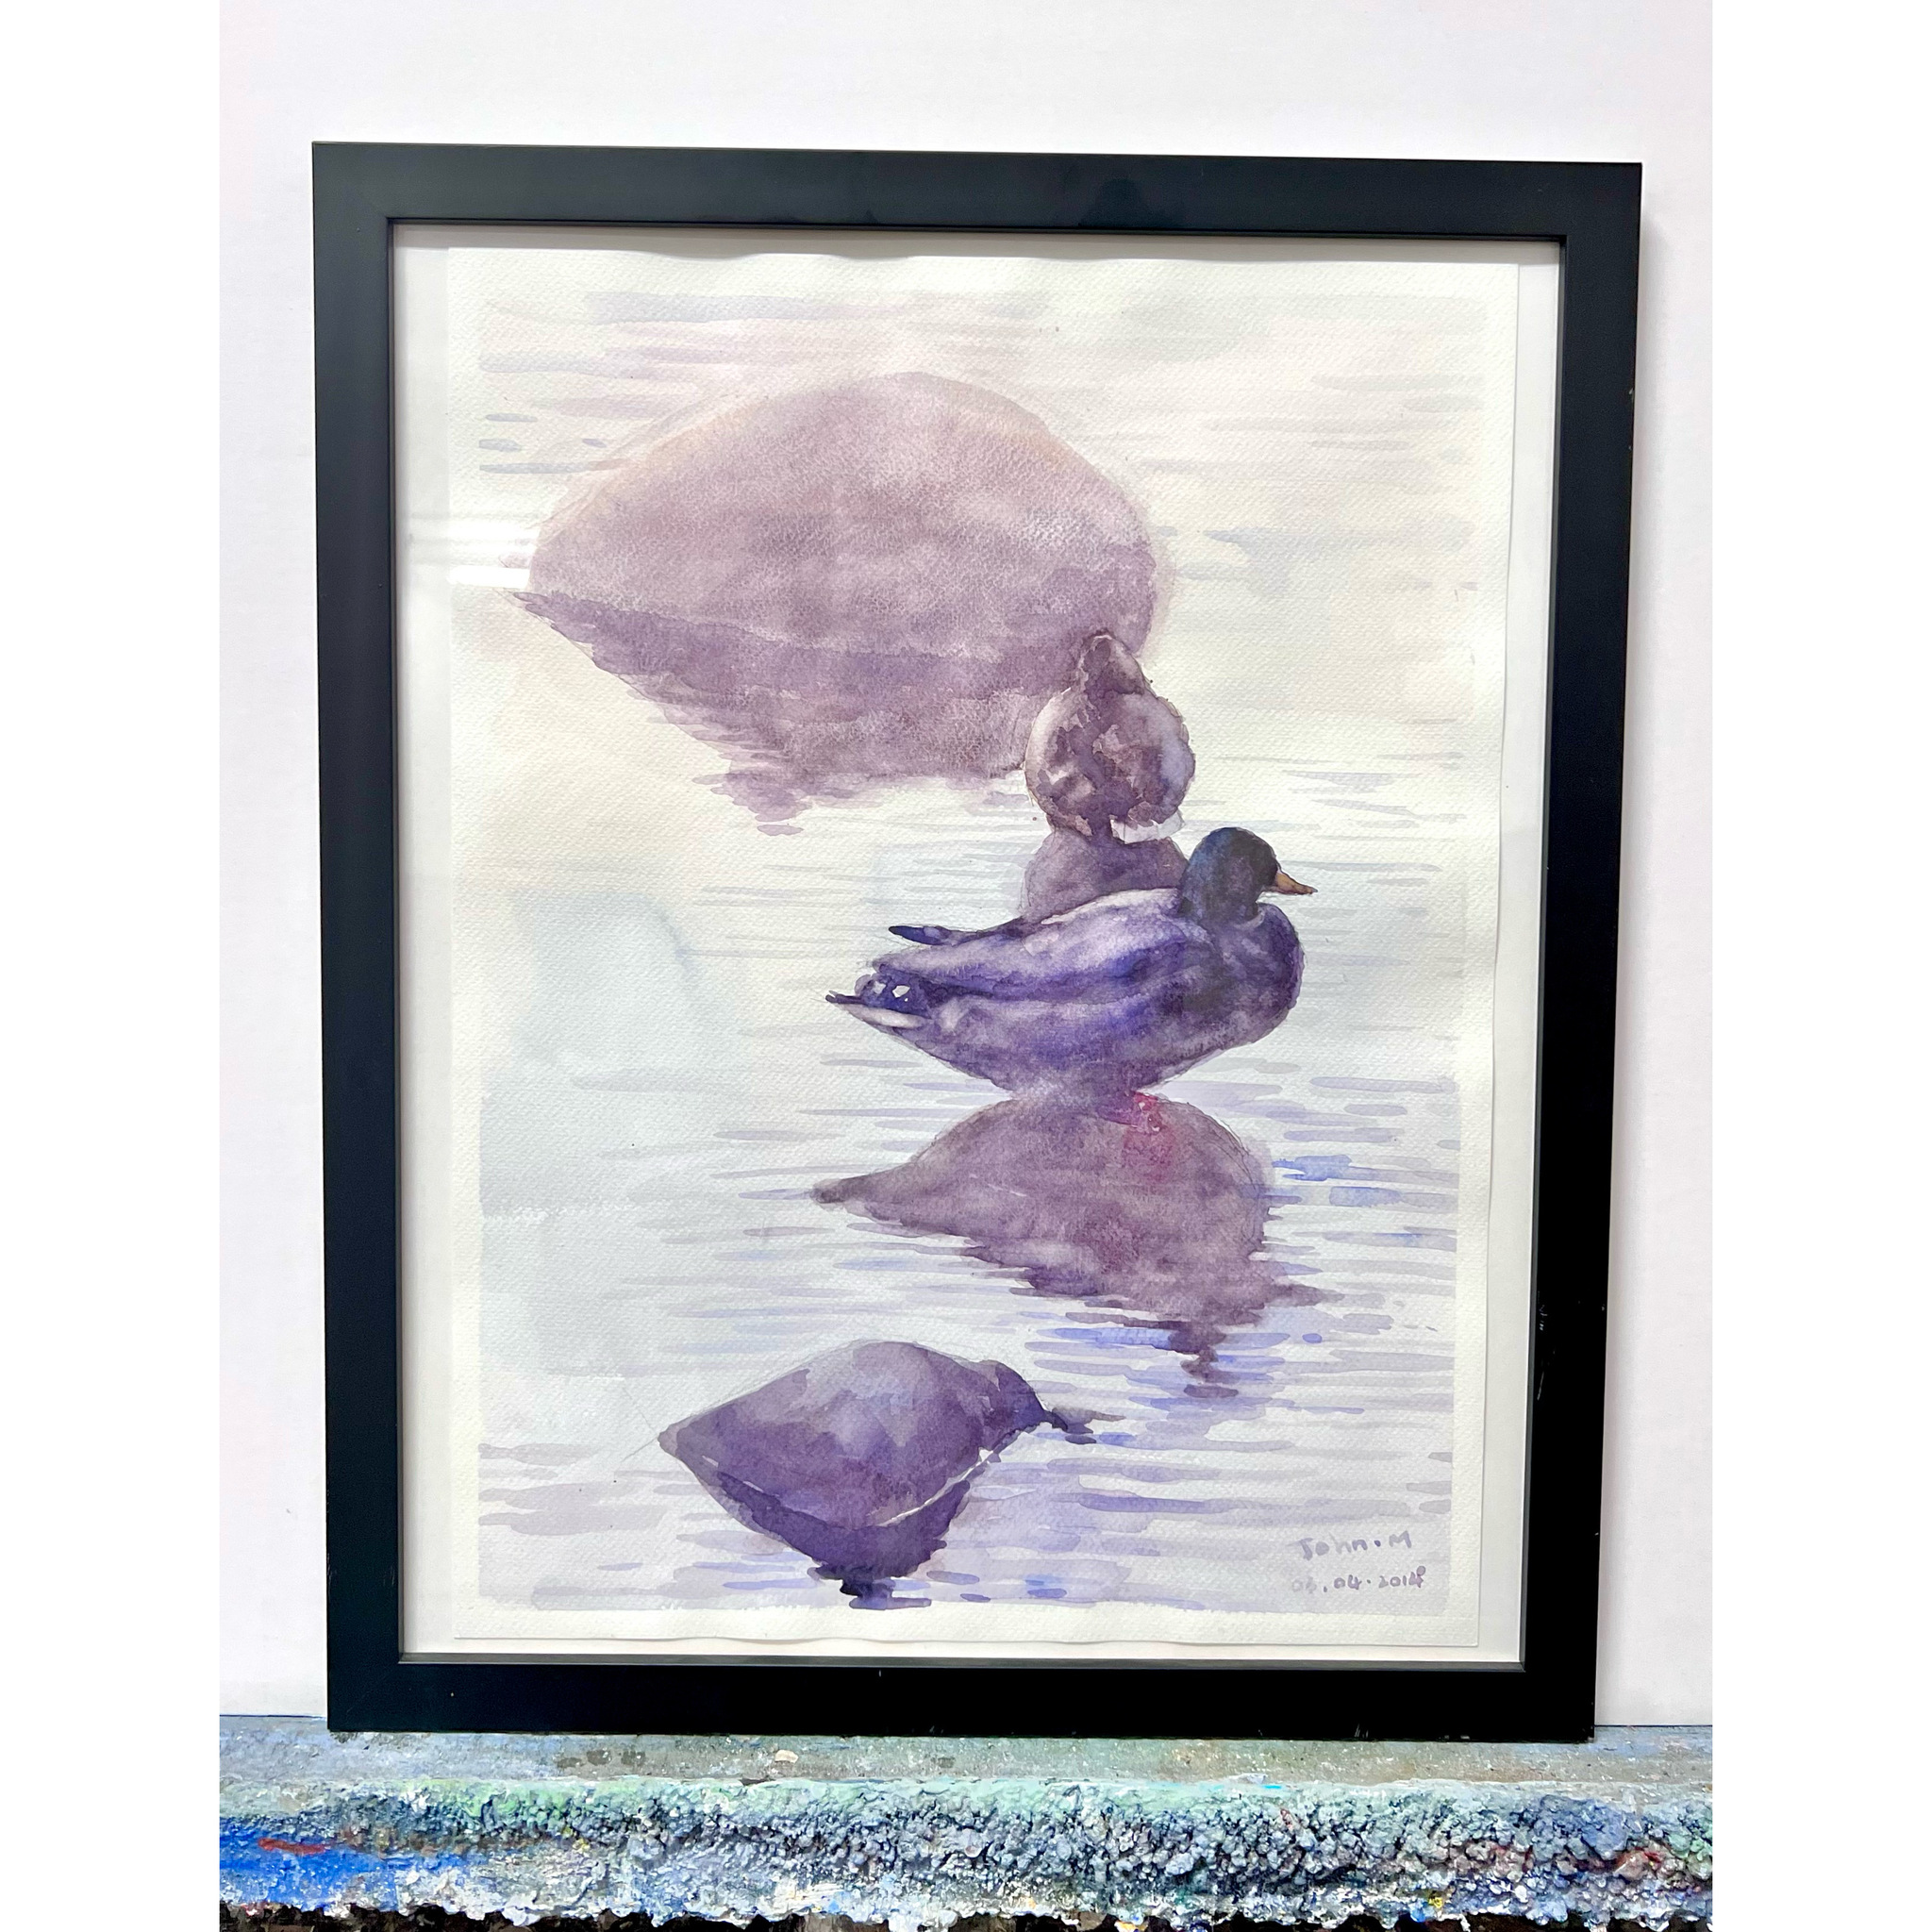 John Ma, "Resting Ducks", Akvarell, 44x54 cm